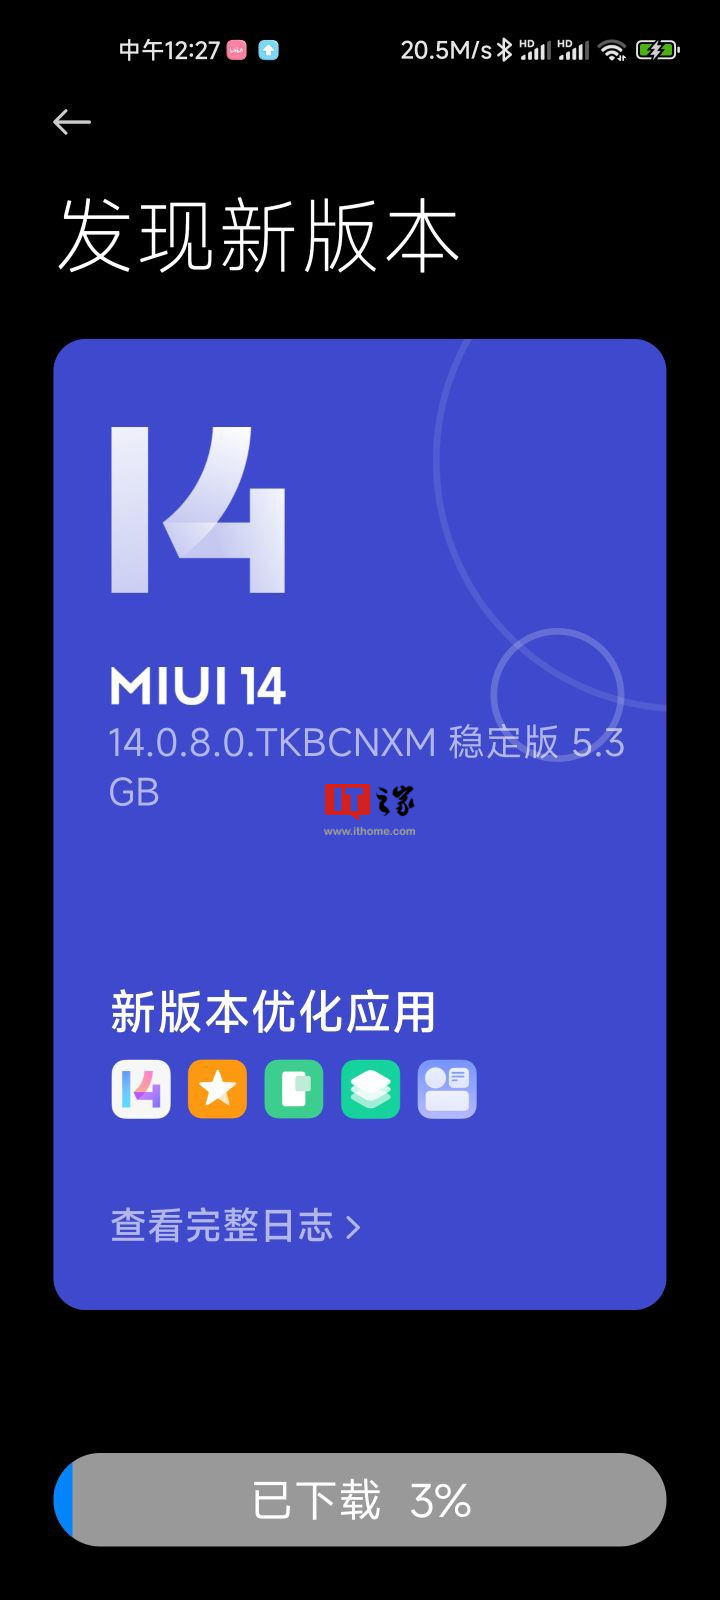 小米 11 手机开始推送安卓 13 / MIUI 14 稳定版